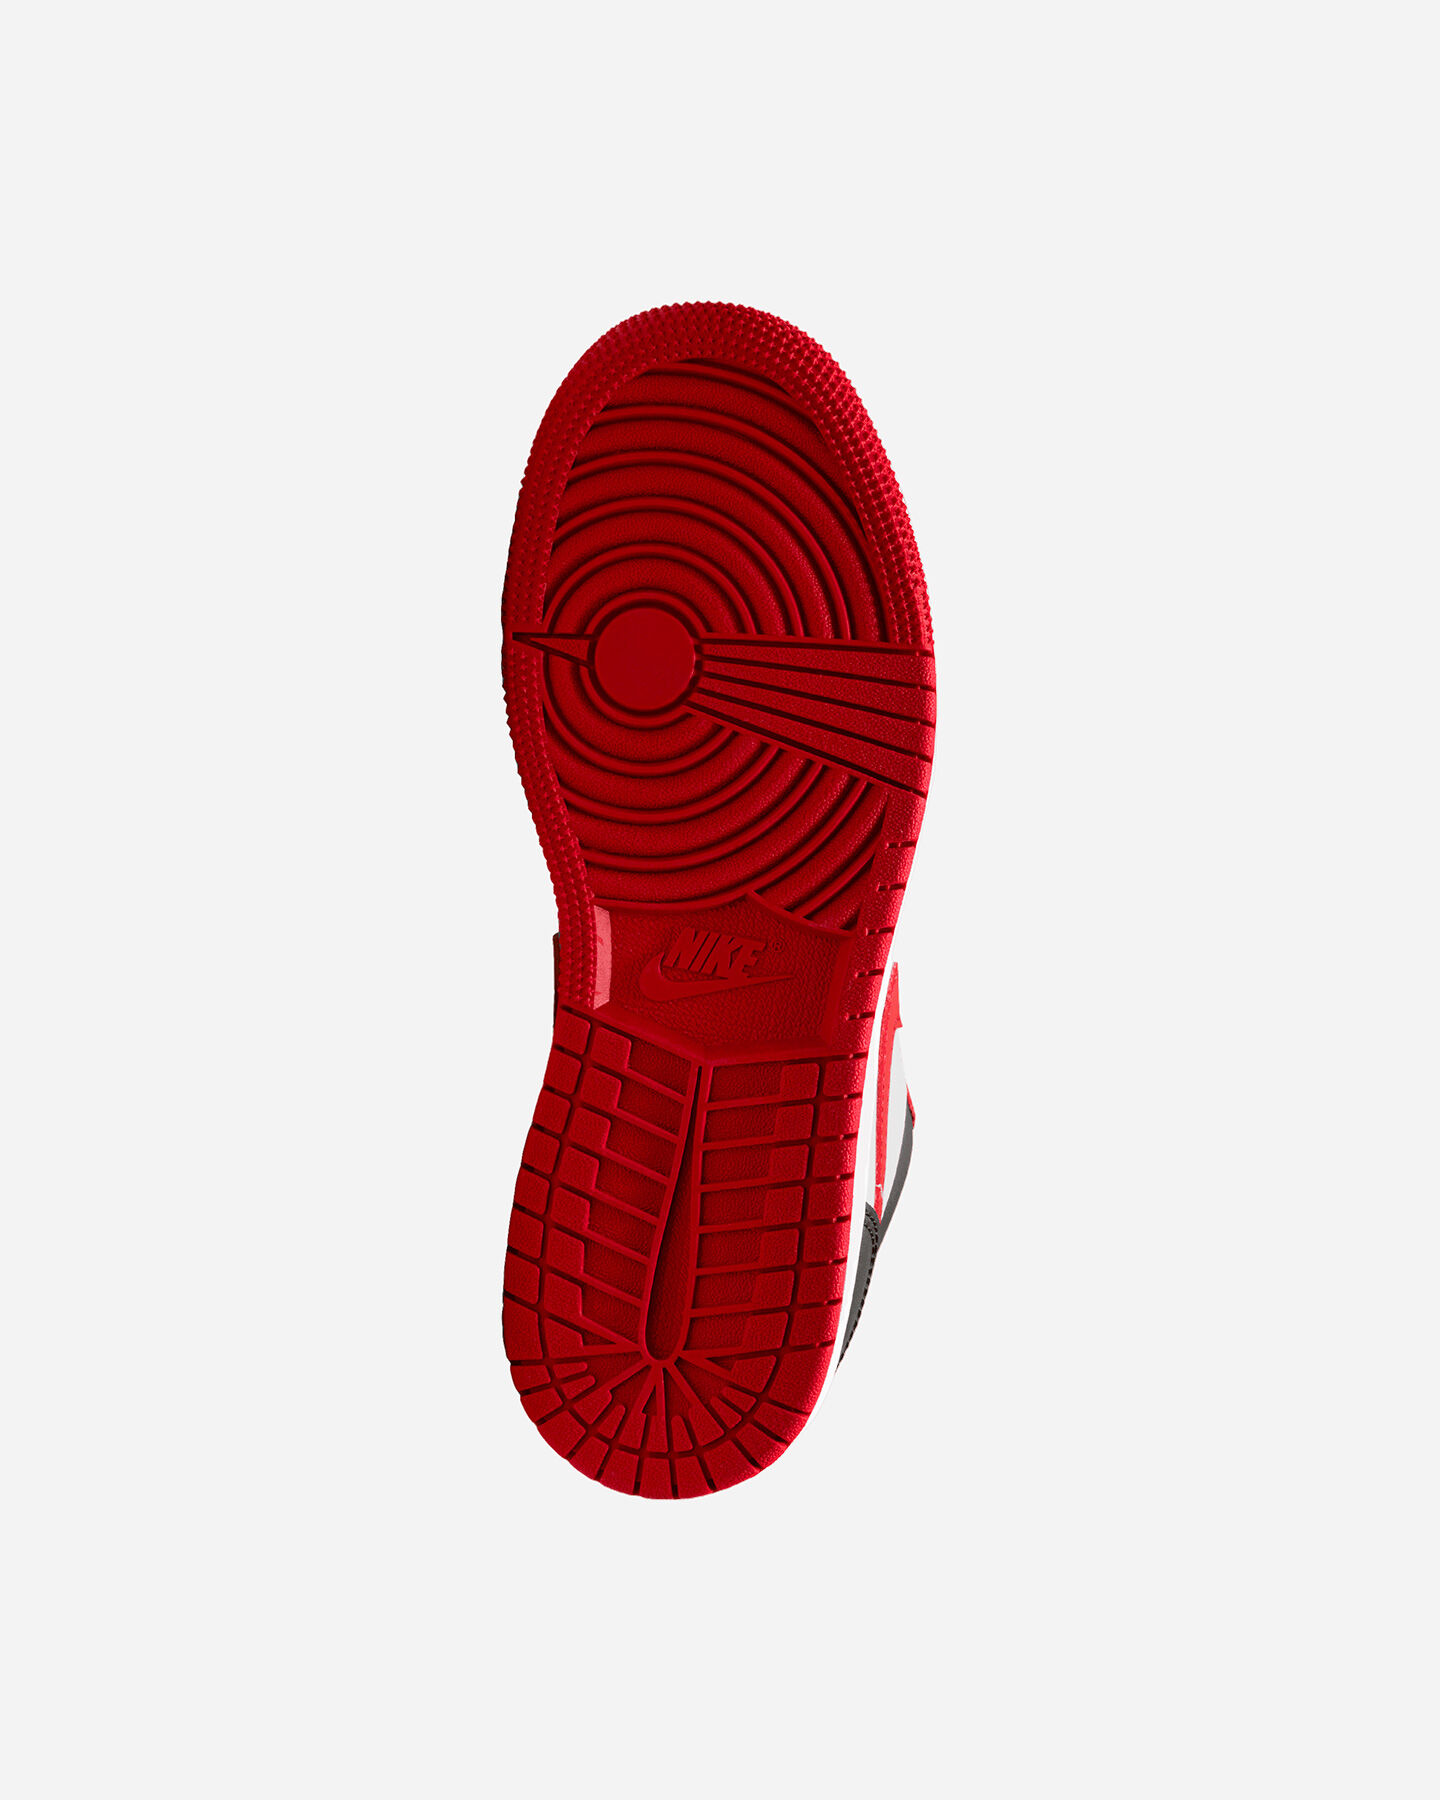  Scarpe sneakers NIKE AIR JORDAN 1 LOW GS JR S5433848|163|3.5Y scatto 2